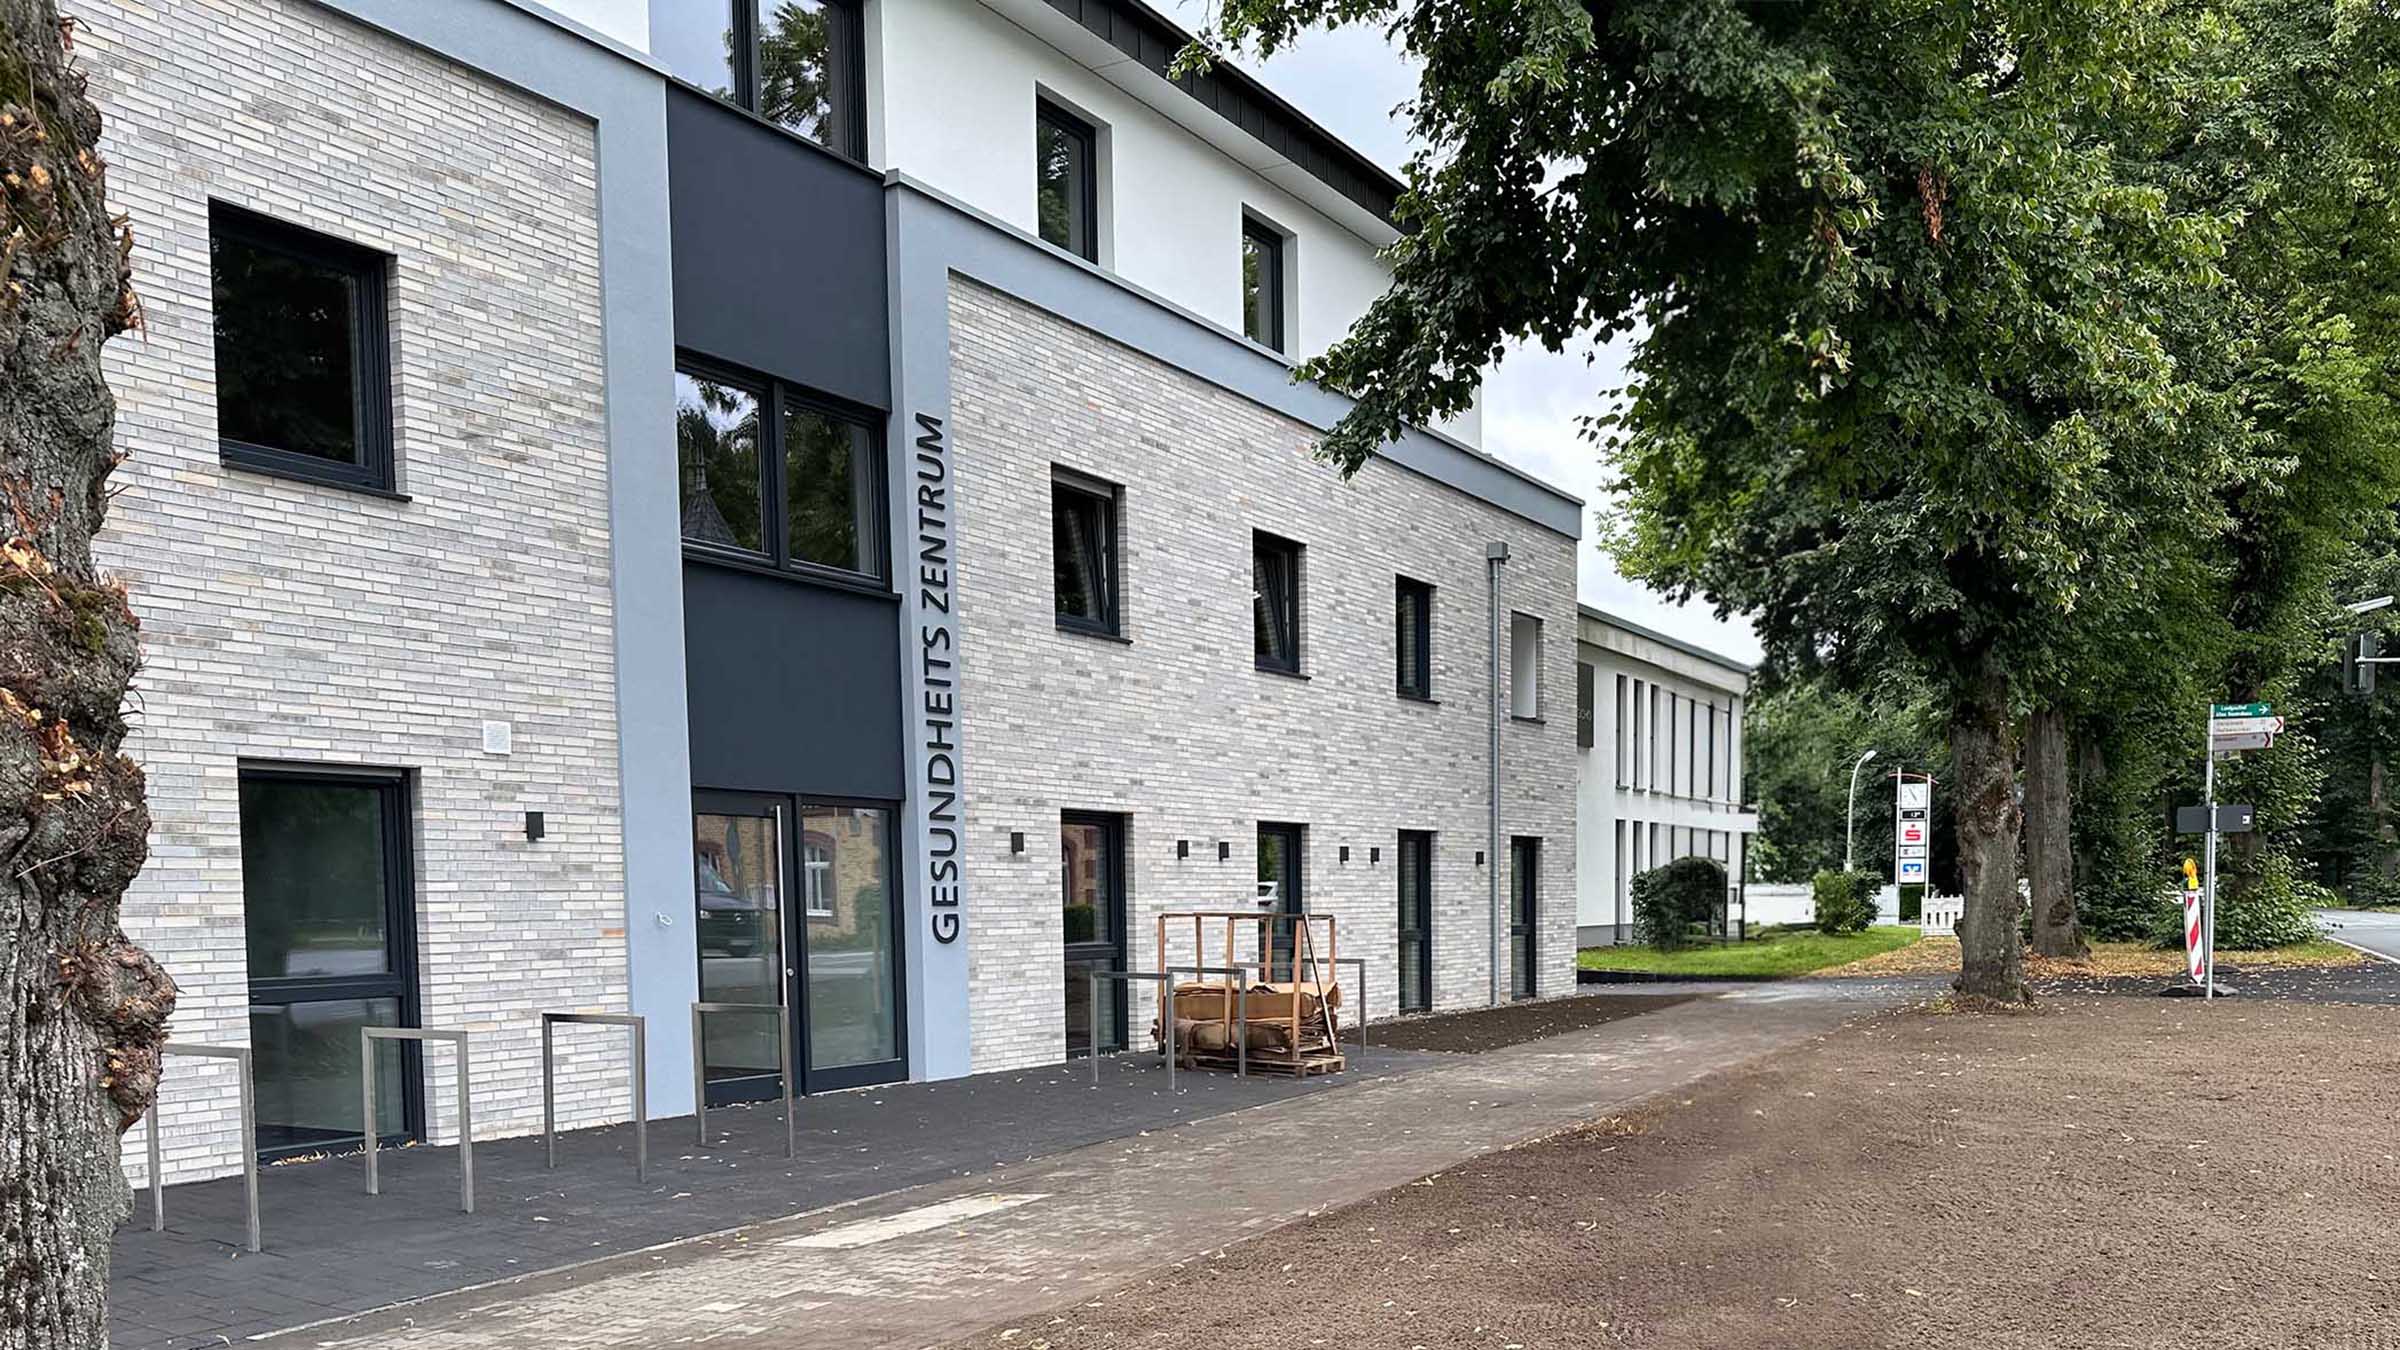 Gesundheitszentrum in Marienfeld mit moderner Klinkerfassade